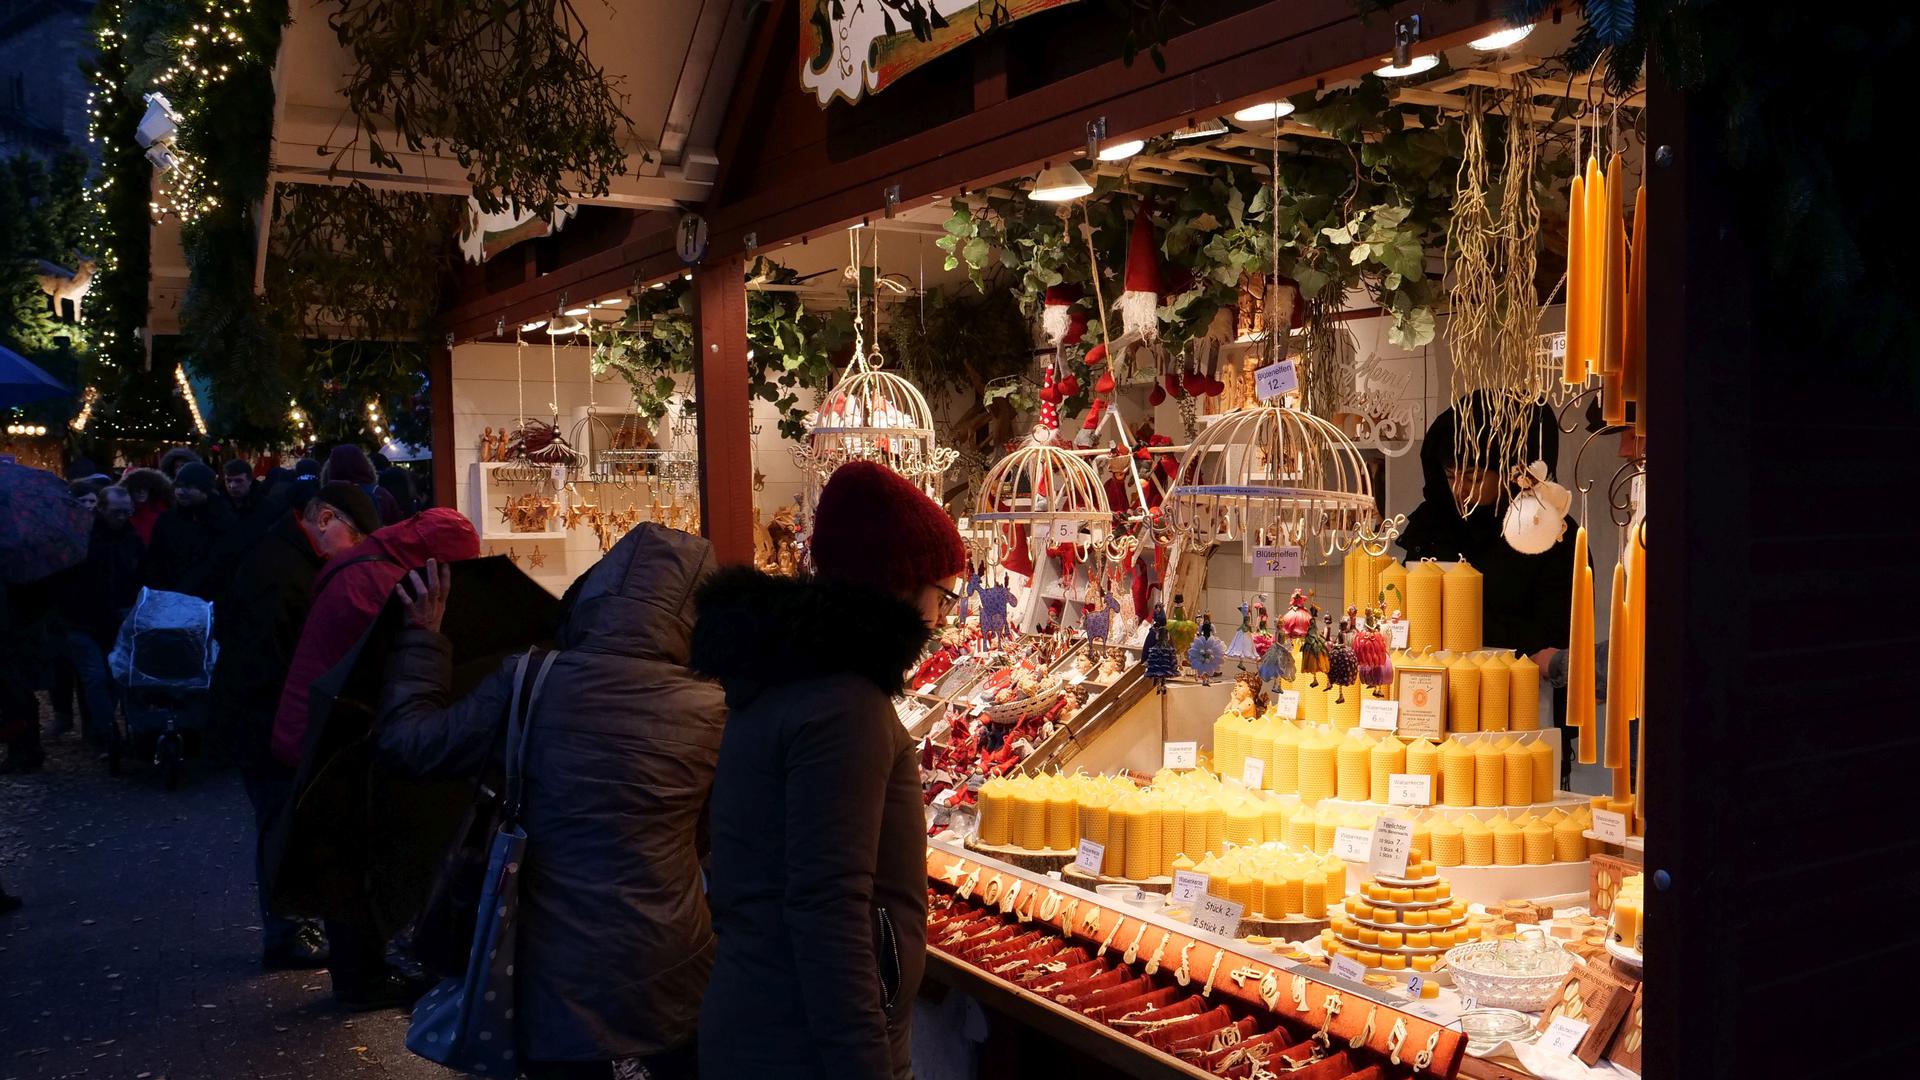 Stimmungsvoll im Advent: Kerzen und Dekorations-Artikel sind Klassiker auf dem Christkindlesmarkt.